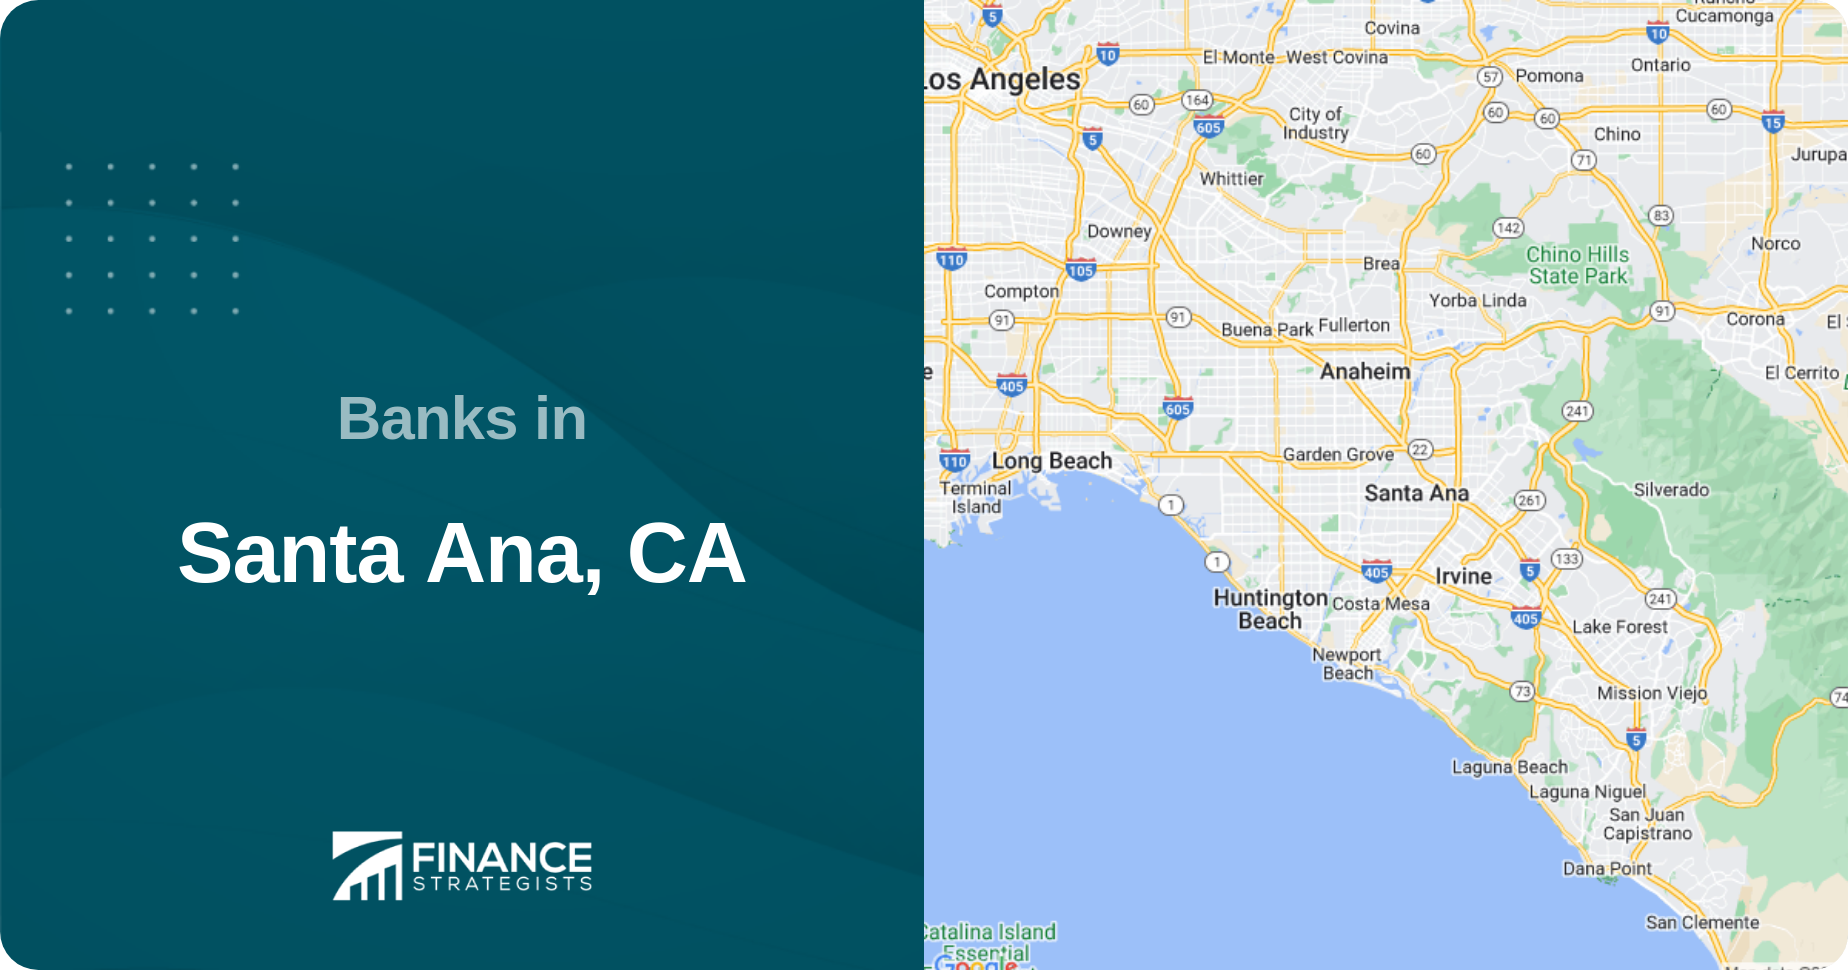 Banks in Santa Ana, CA